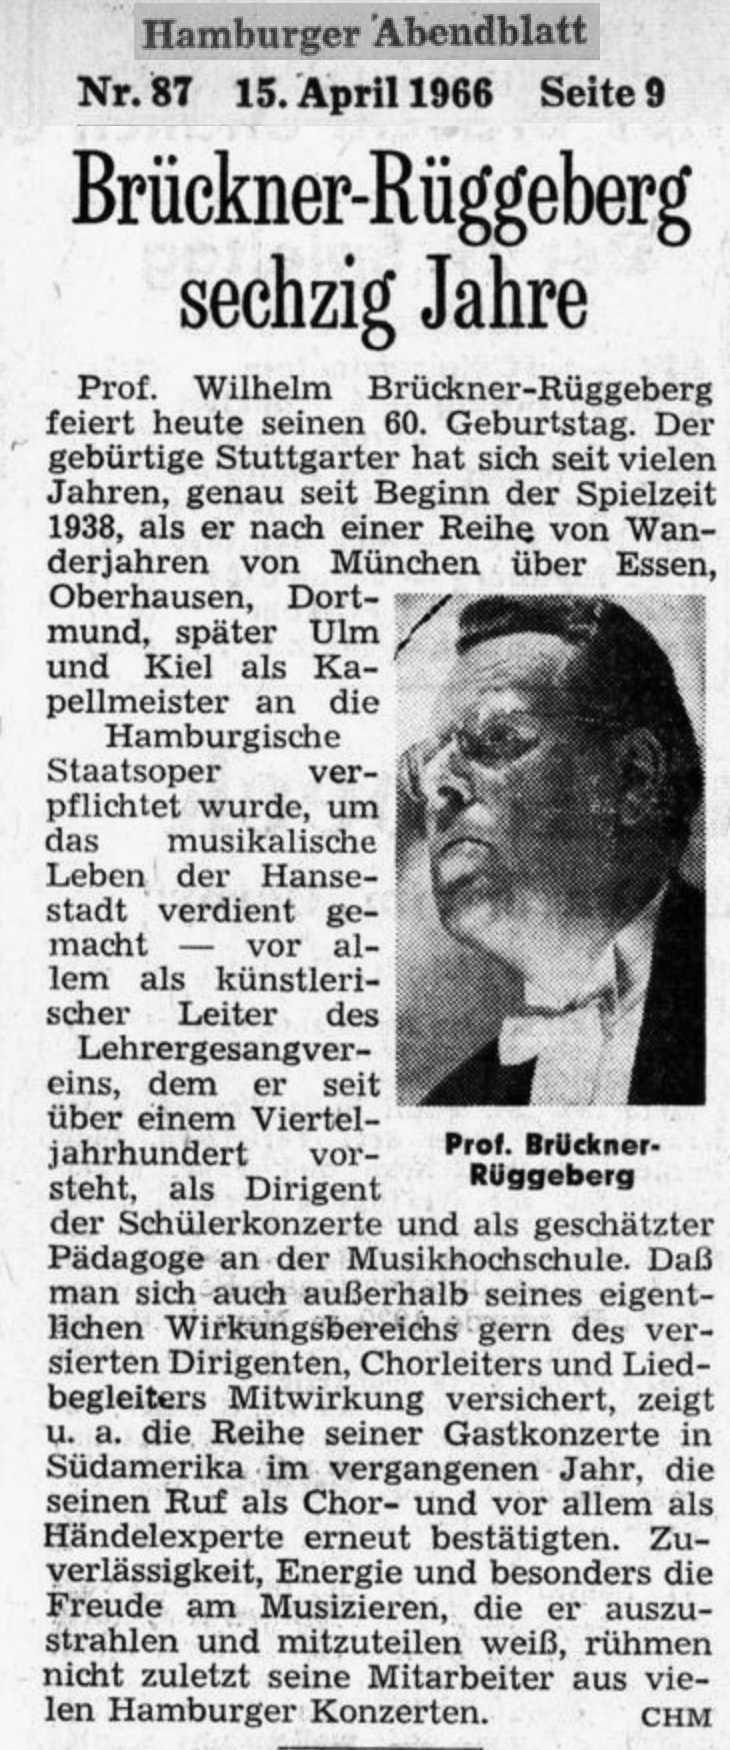 Wilhelm BRÜCKNER-RÜGGEBERG à 60 ans, clicquer pour voir l'original